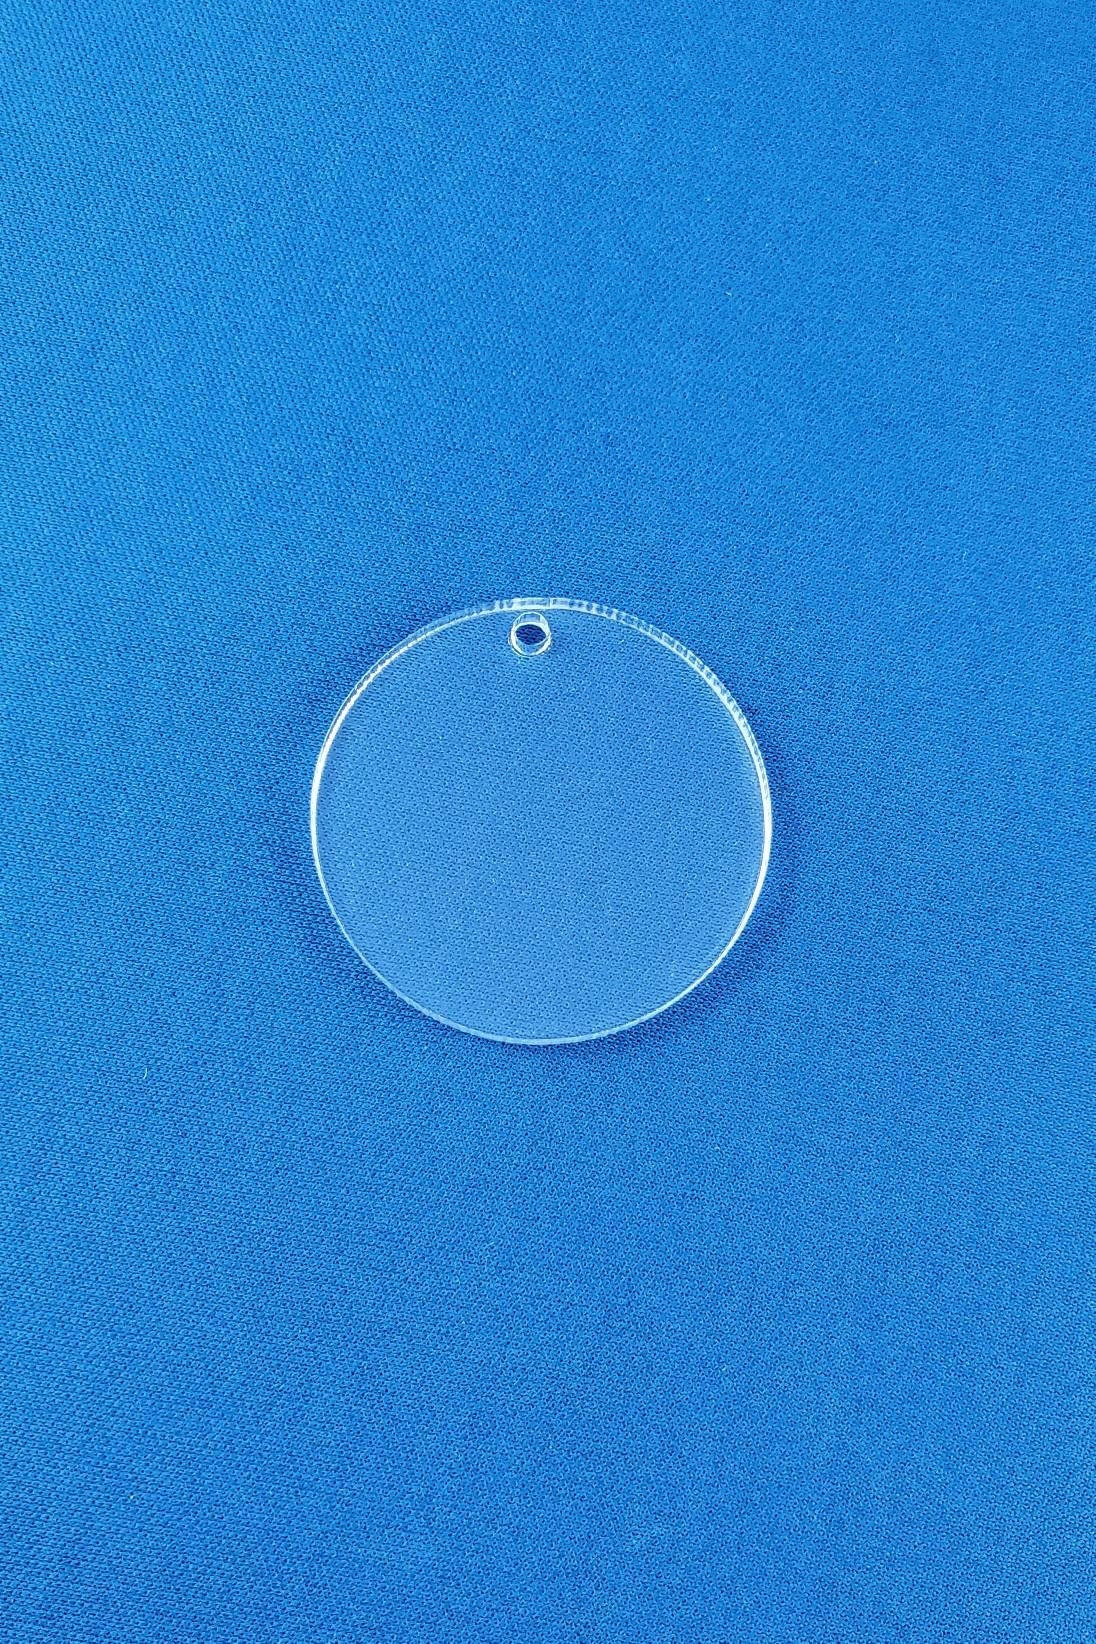 3 Pièces Cercles Acryliques Clairs Blancs Disques Acryliques Disque En  Plexiglas Transparent Feuille Acrylique Ronde Pour Projets De Bricolage Et  Artisanat, Trouvez De Bonnes Affaires Maintenant